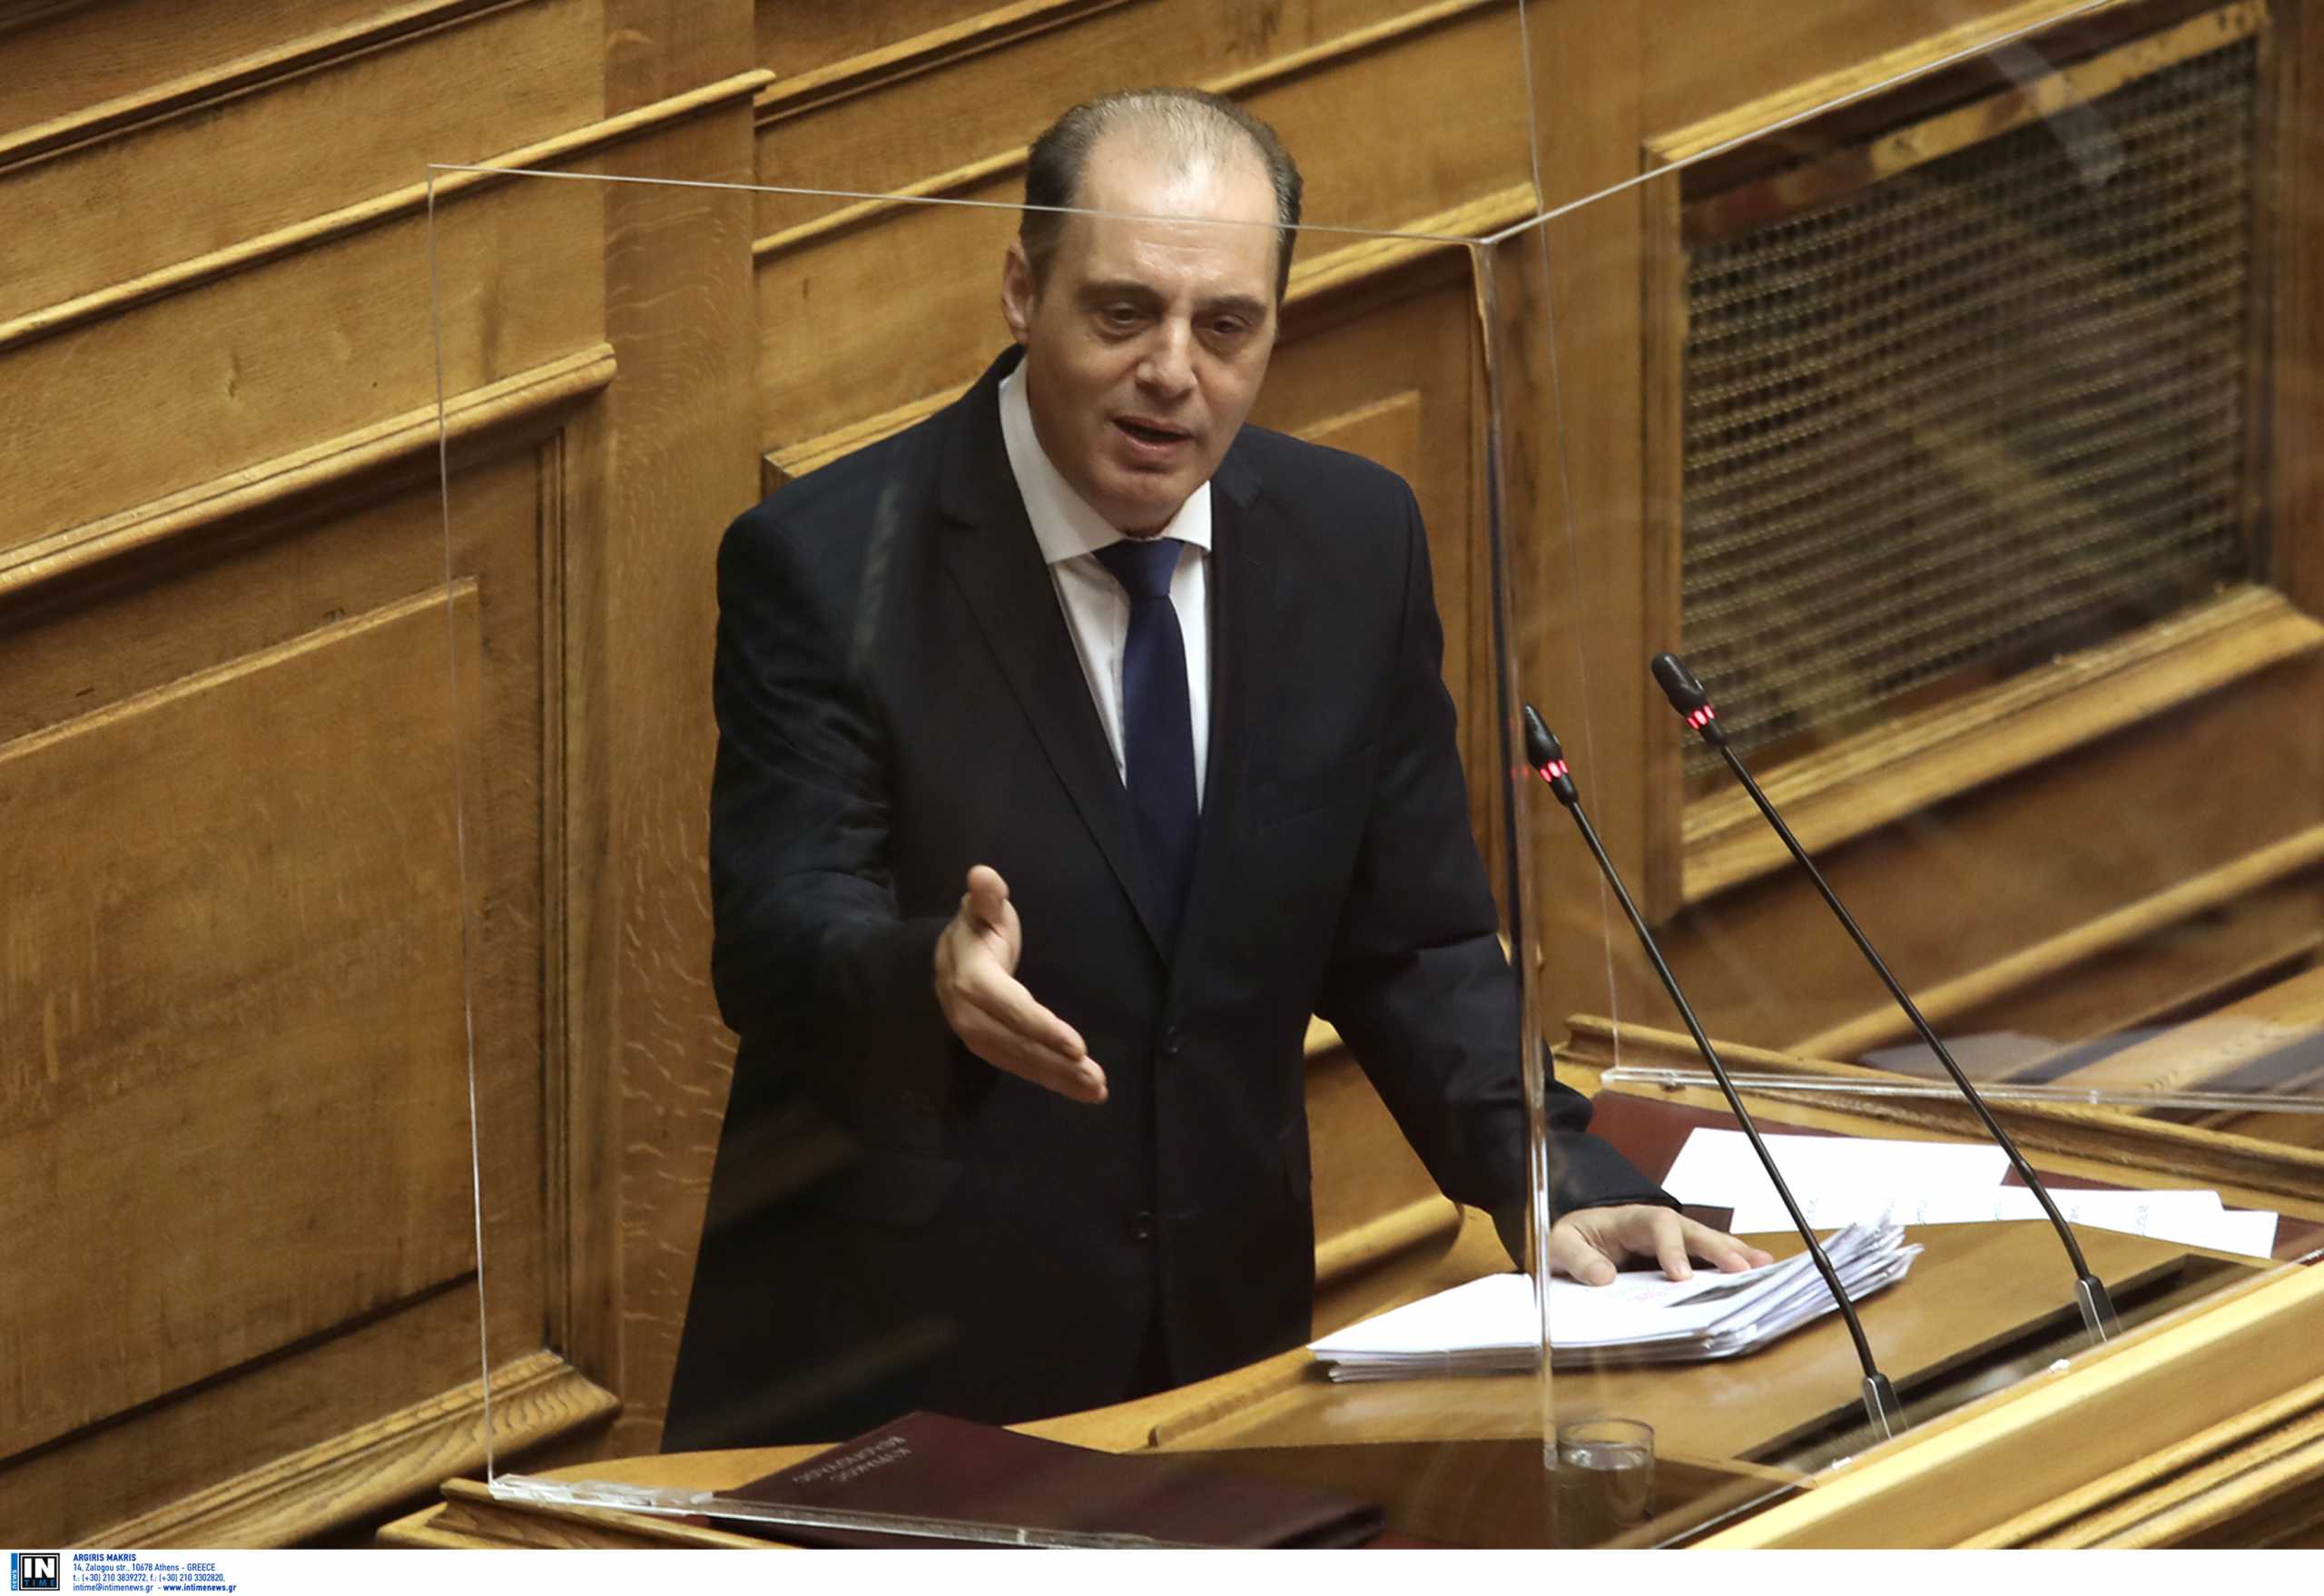 Κυριάκος Βελόπουλος: Πρέπει να πάμε άμεσα σε εκλογές